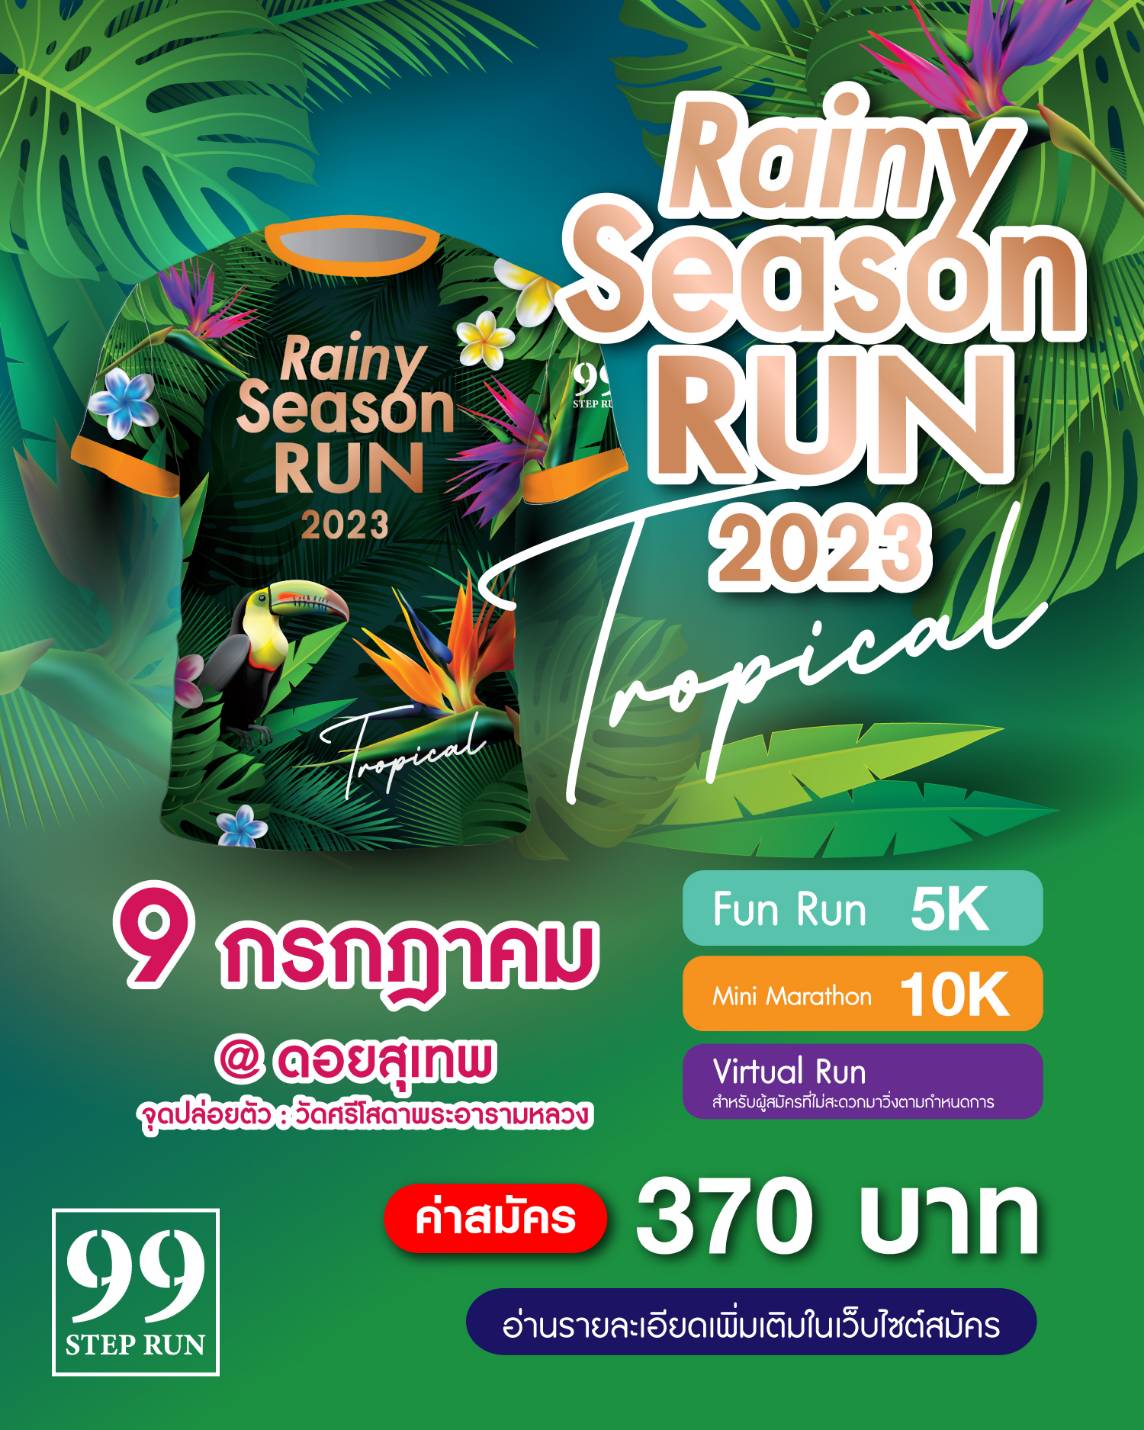 Rainy Season Run 2023